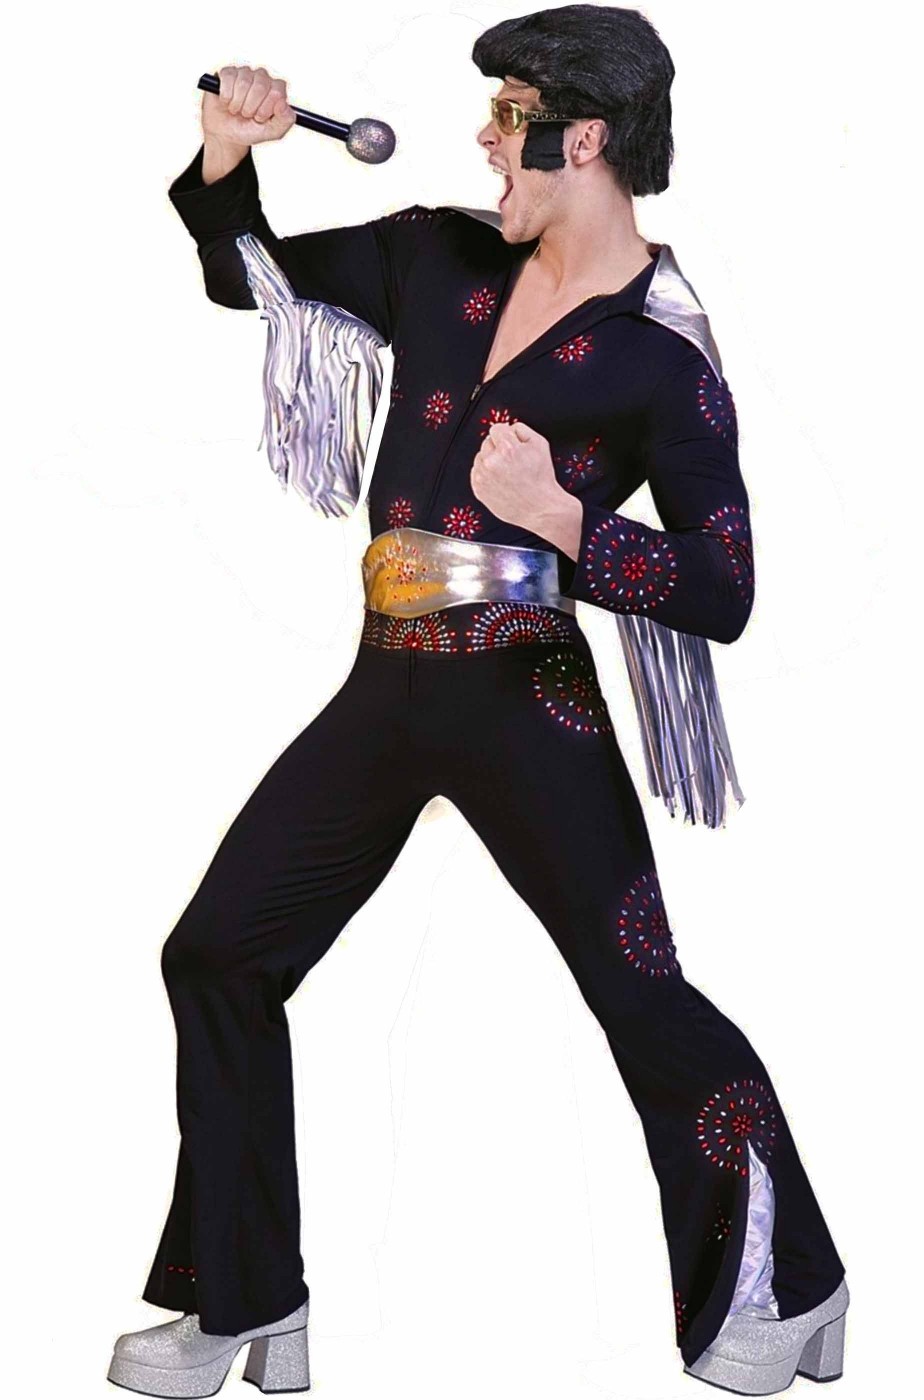 Costume di carnevale Elvis Presley Adulto The King nero con pietre in rilievo